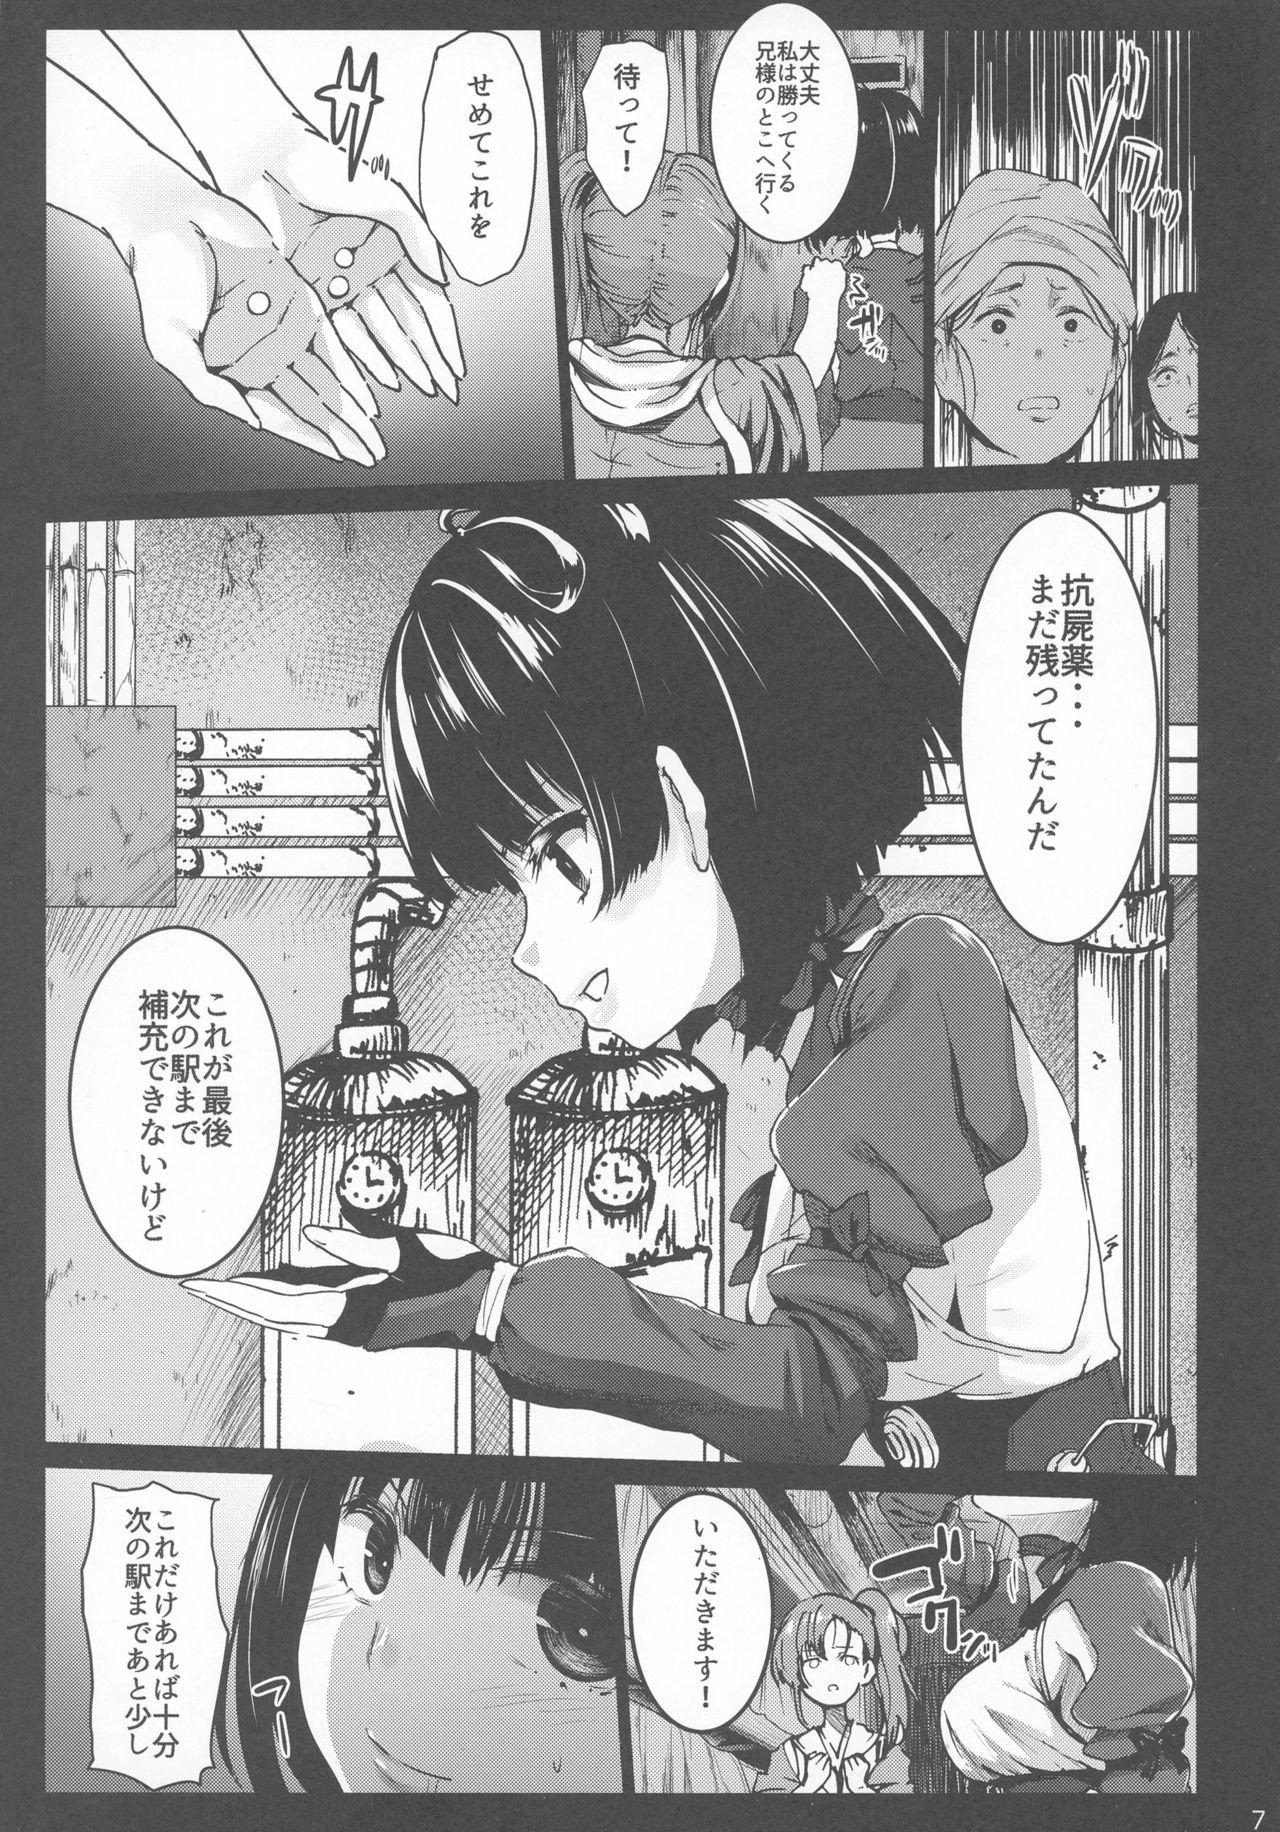 Threesome Inyokujou no Kabaneri - Koutetsujou no kabaneri Escort - Page 7